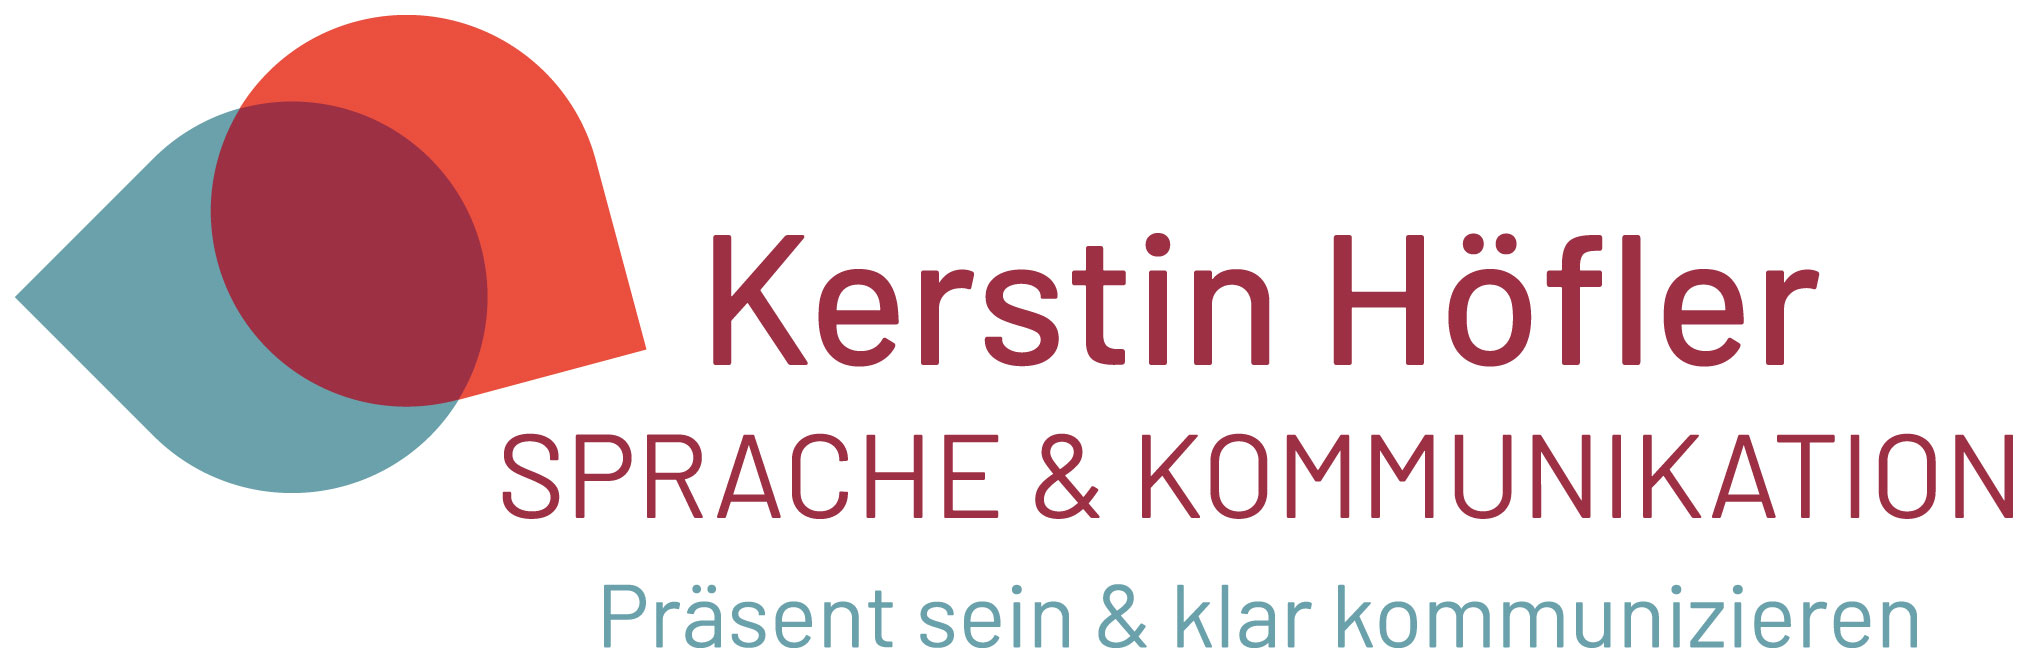 Kerstin Hoefler Workshop